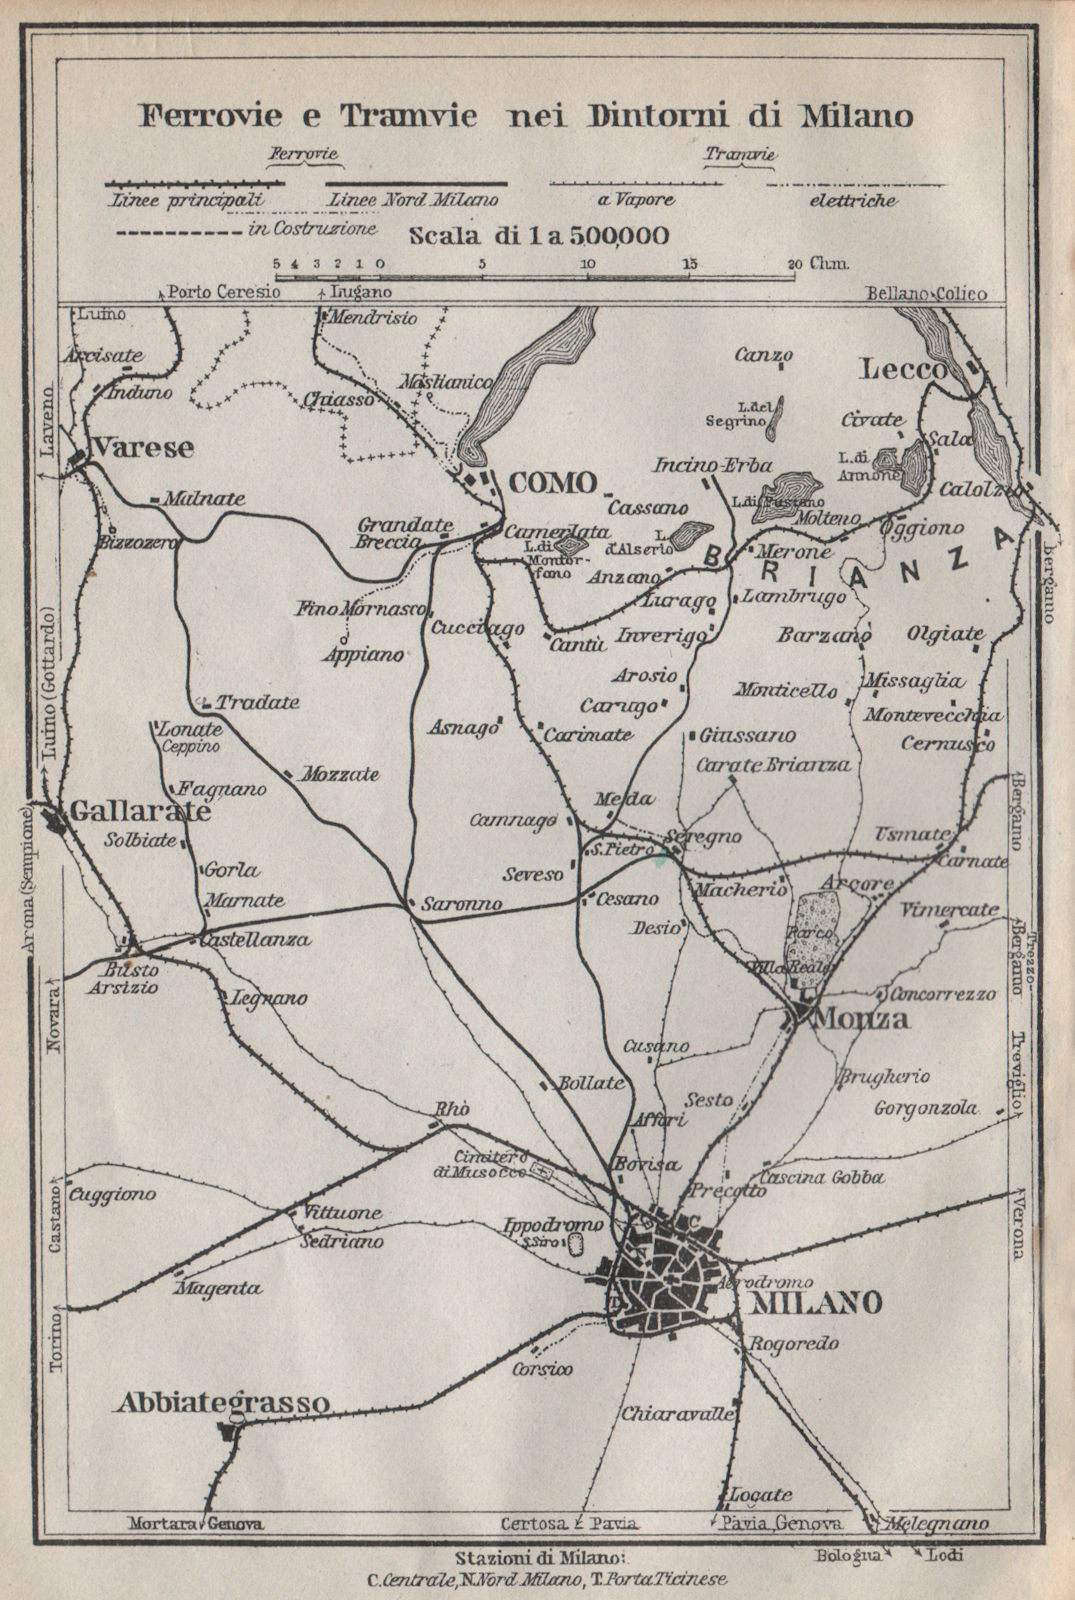 FERROVIE E TRAMWAYS NEI DINTORNI DI MILANO. Railways Como Lecco Monza 1913 map